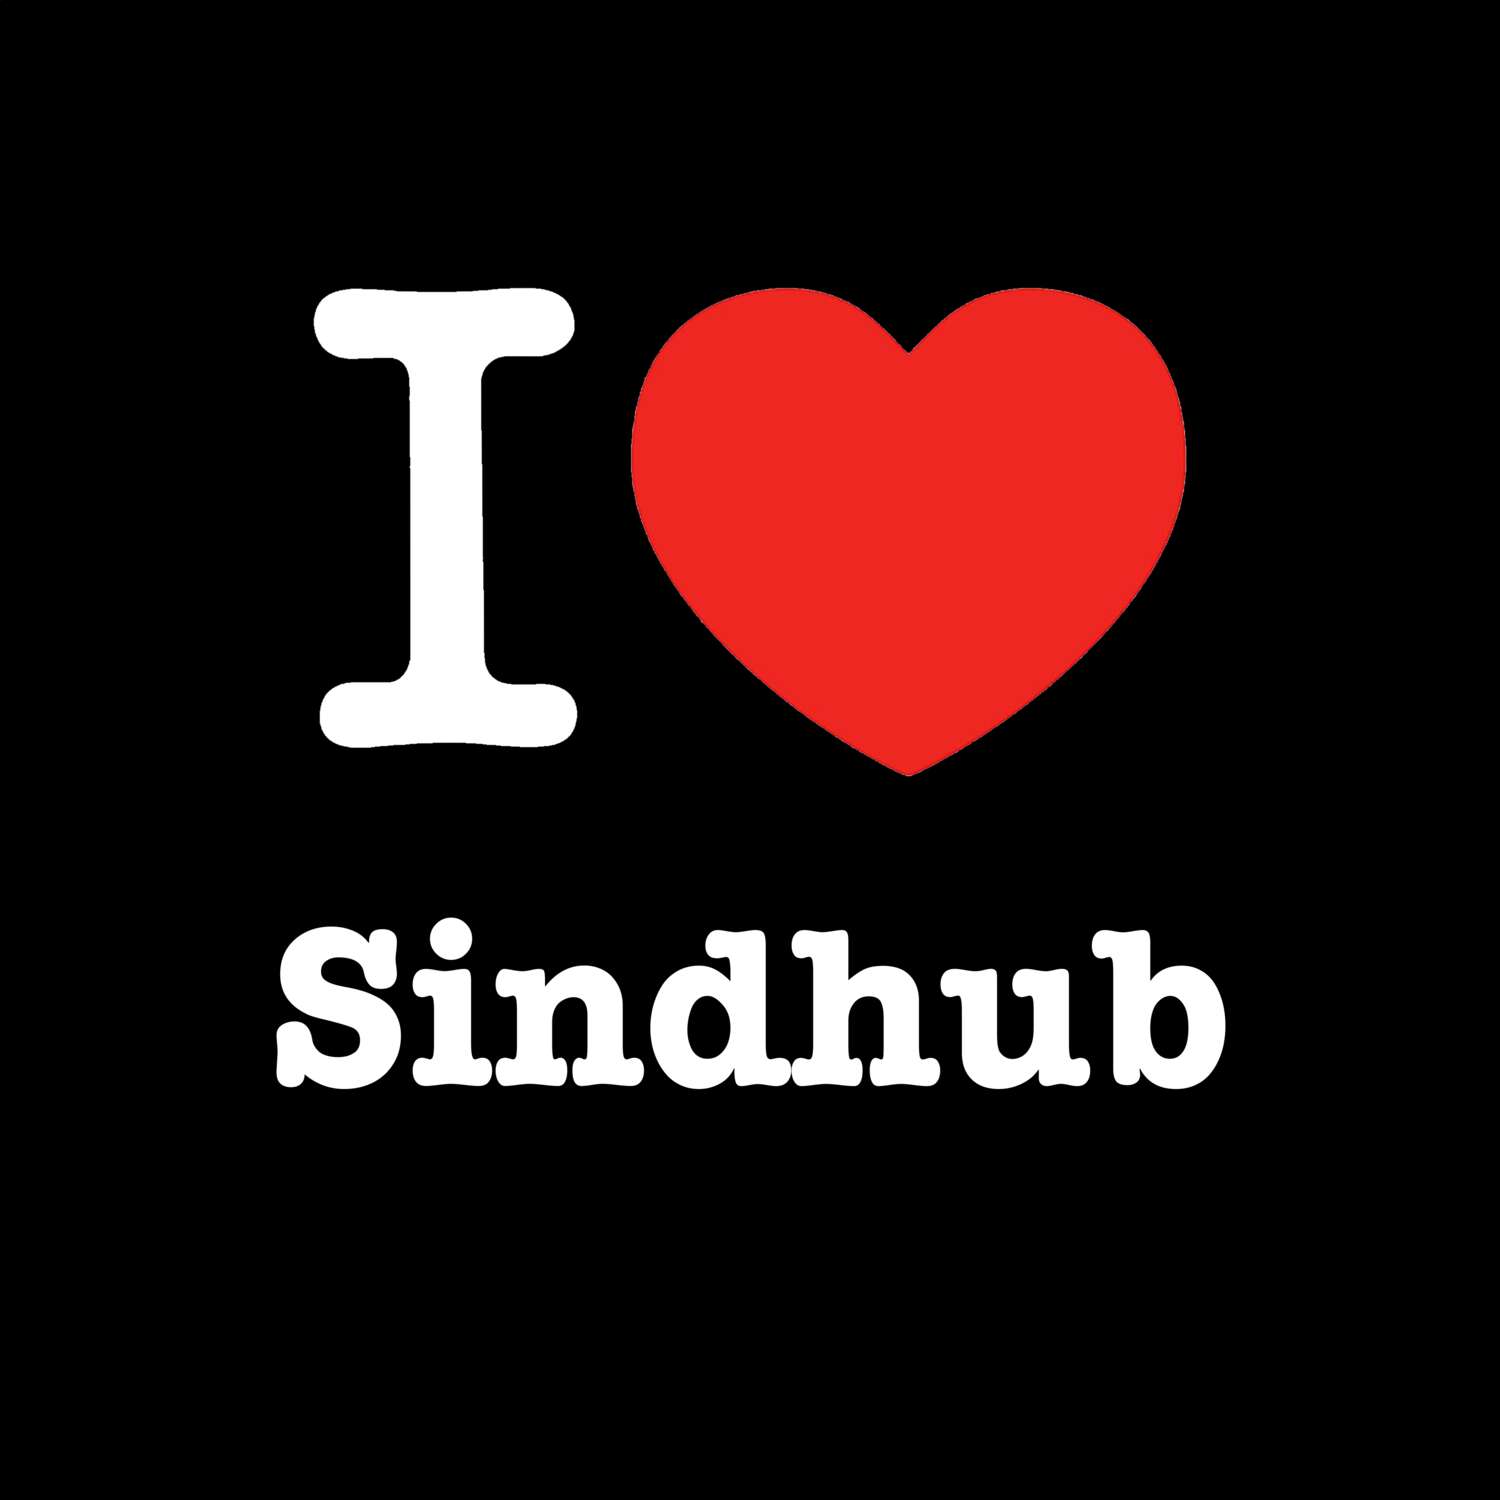 Sindhub T-Shirt »I love«